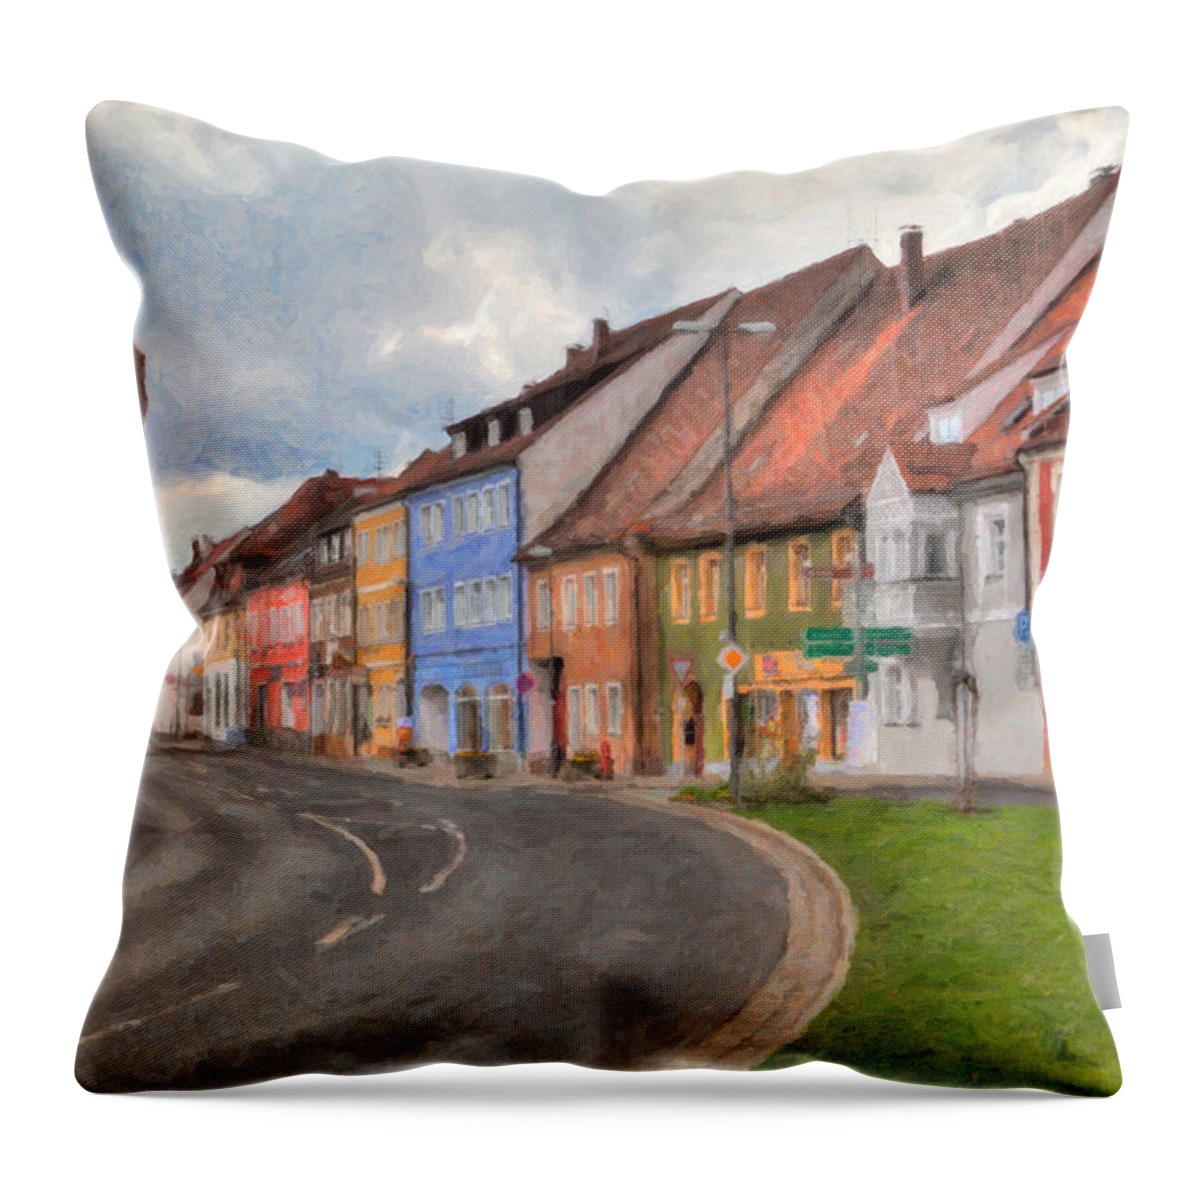 Vilseck Throw Pillow featuring the photograph Vilseck Marktplatz by Shirley Radabaugh